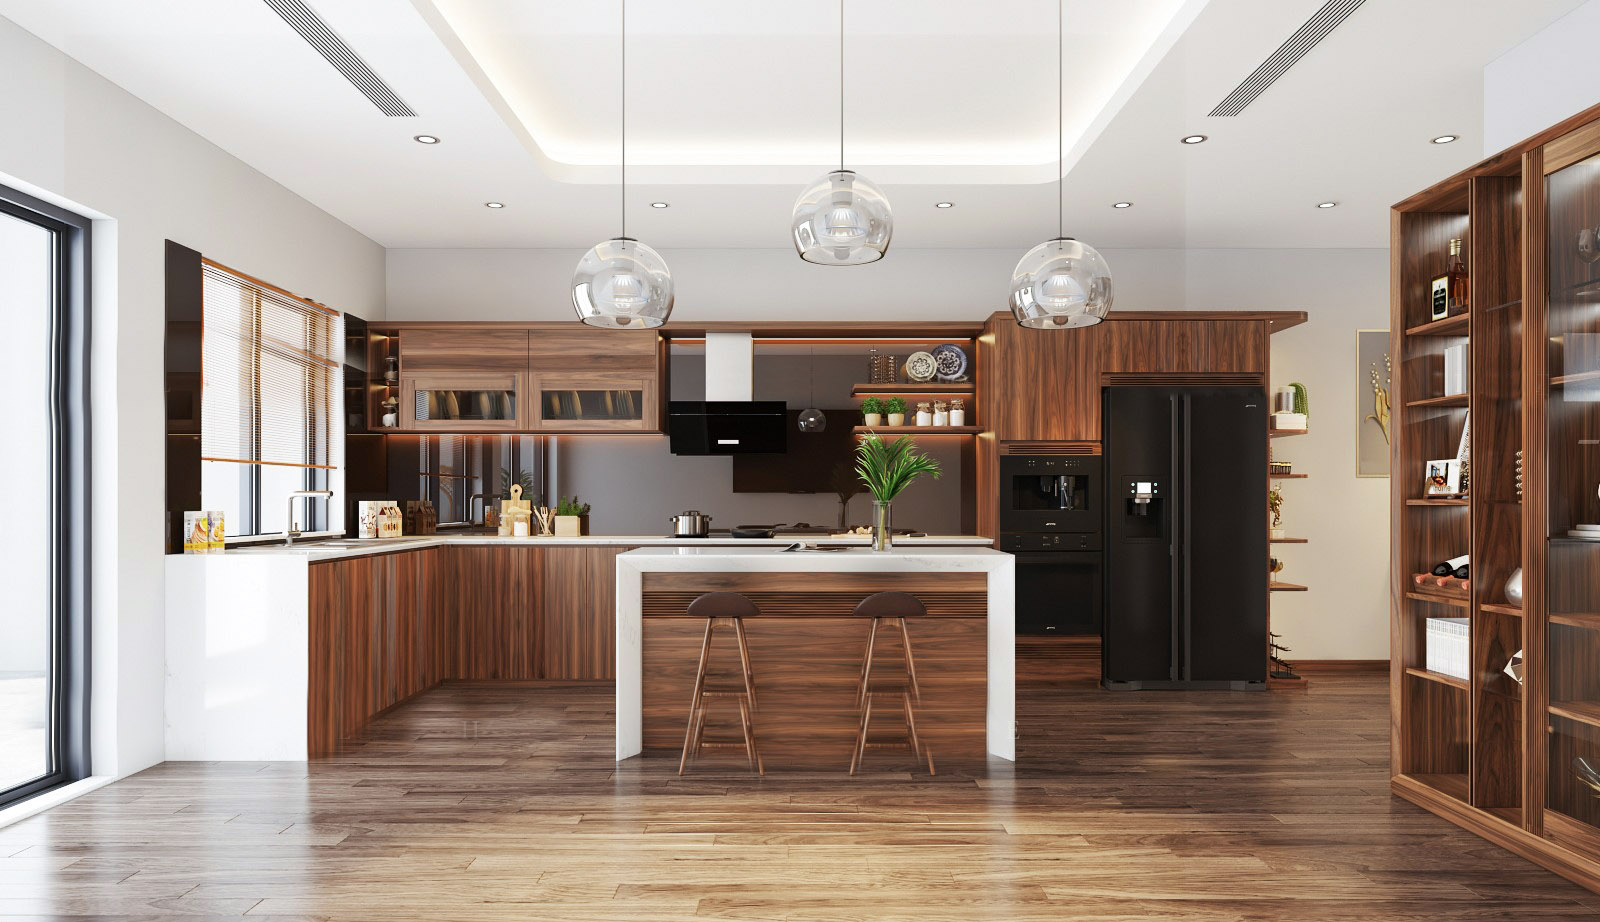 35+ mẫu thiết kế nhà bếp dành cho nhà cấp 4 đơn giản, hiện đại